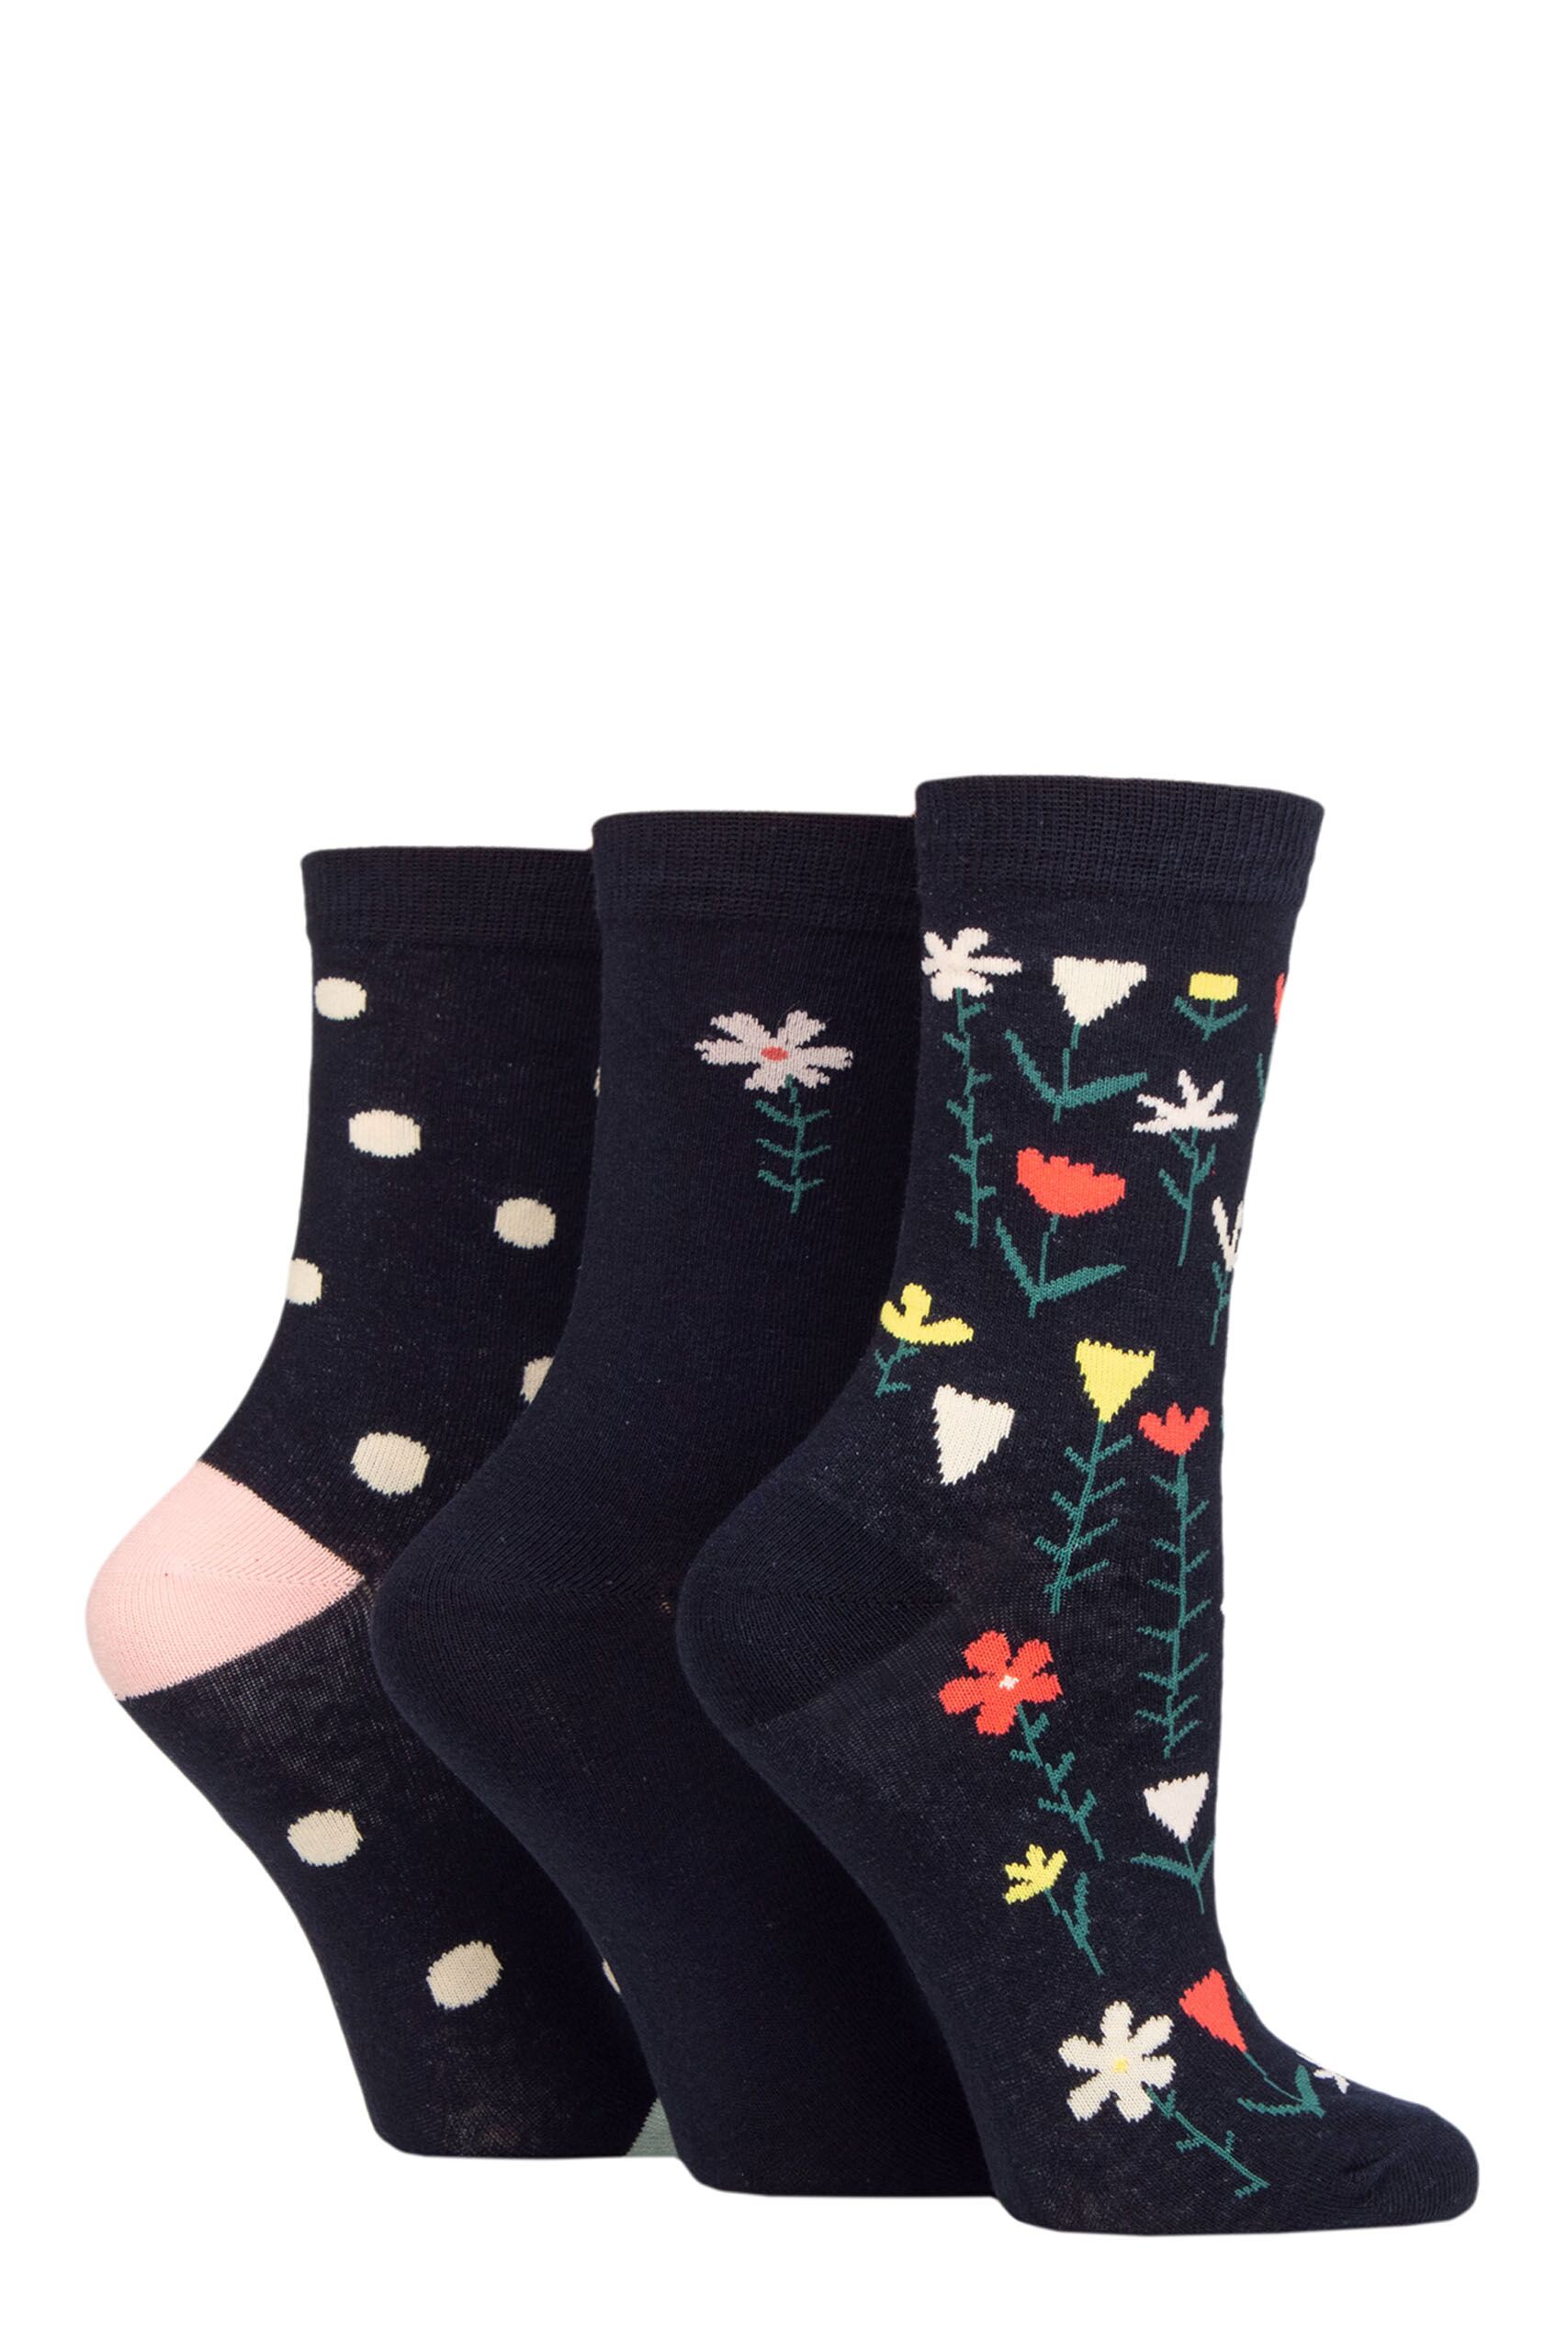 Ladies 3 Pair Caroline Gardner Patterned Cotton Socks Floral Navy UK 4-8